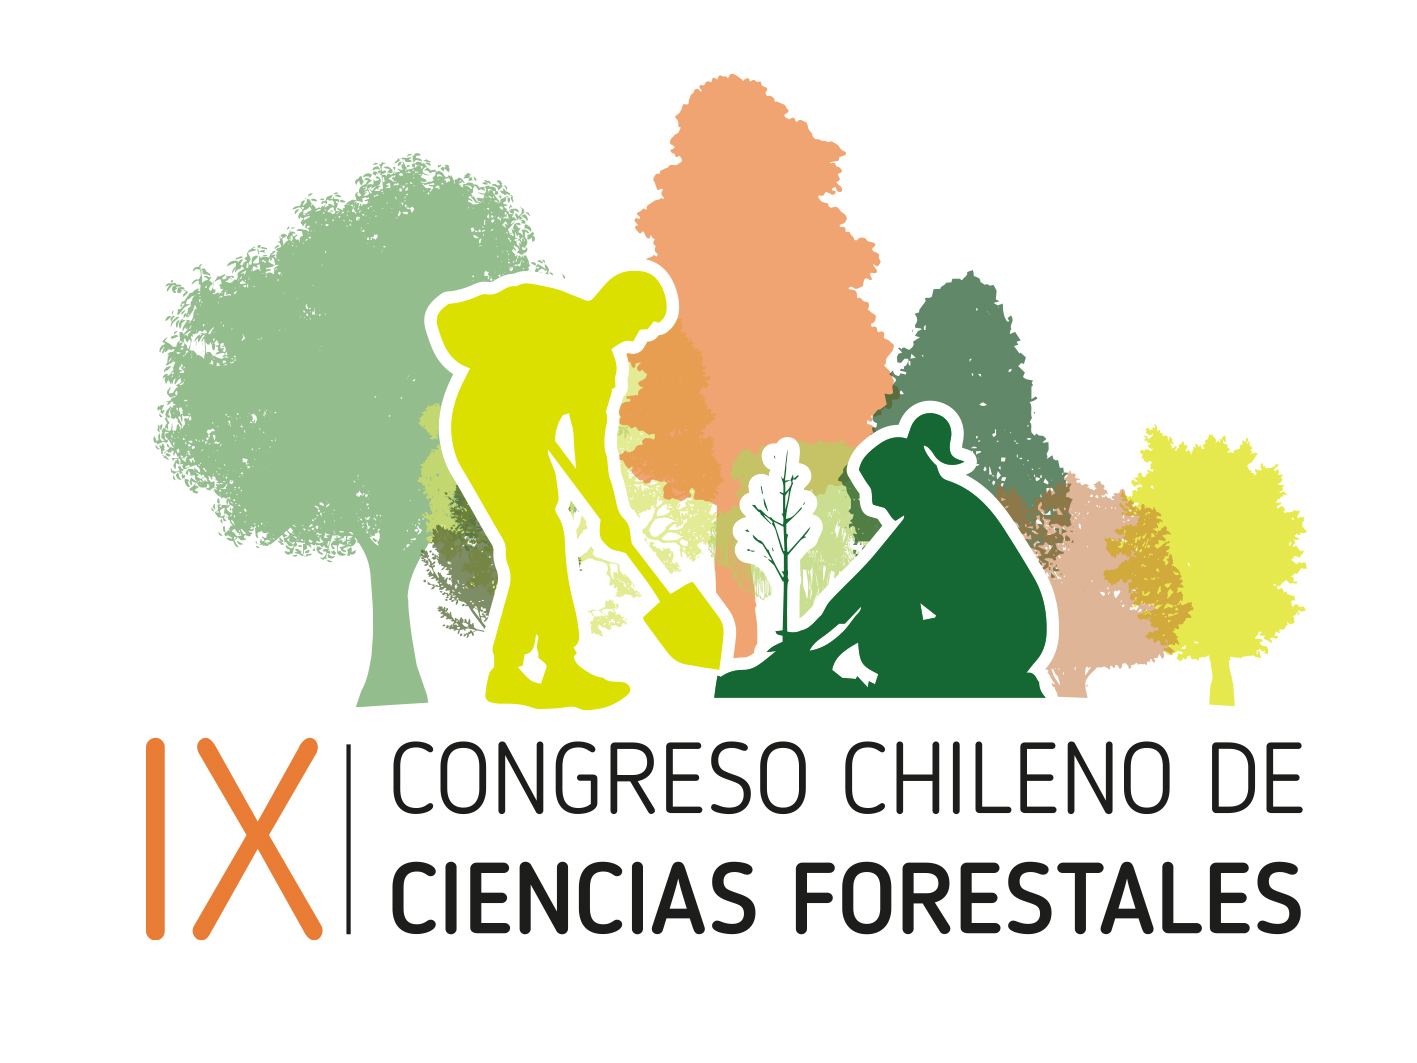 IX Congreso Chileno de Ciencias Forestales amplía plazo para recepción de resúmenes